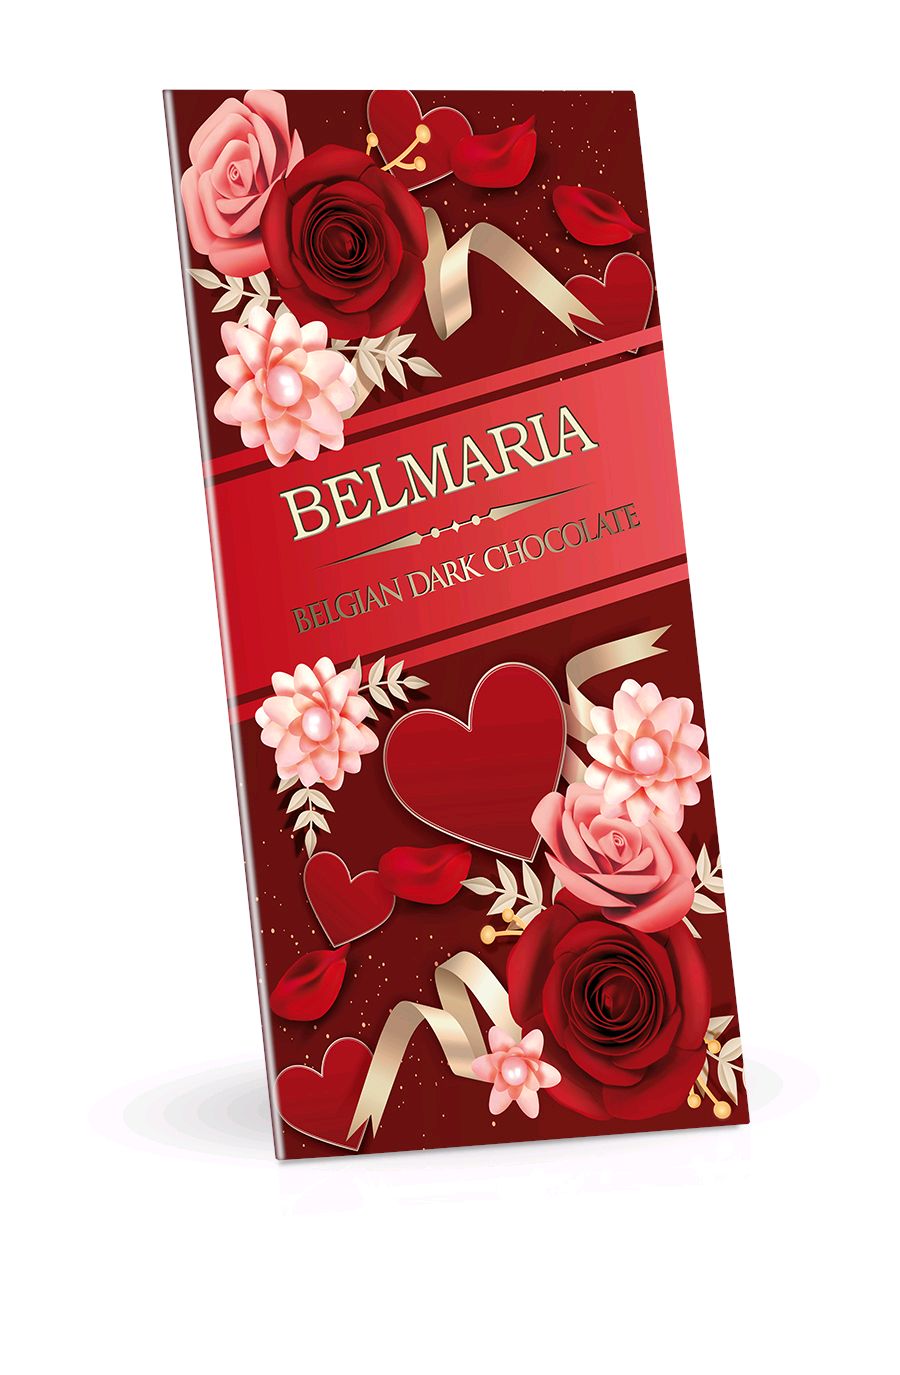 BELMARIA Červená srdíčka - Belgická hořká čokoláda 72% 180 g